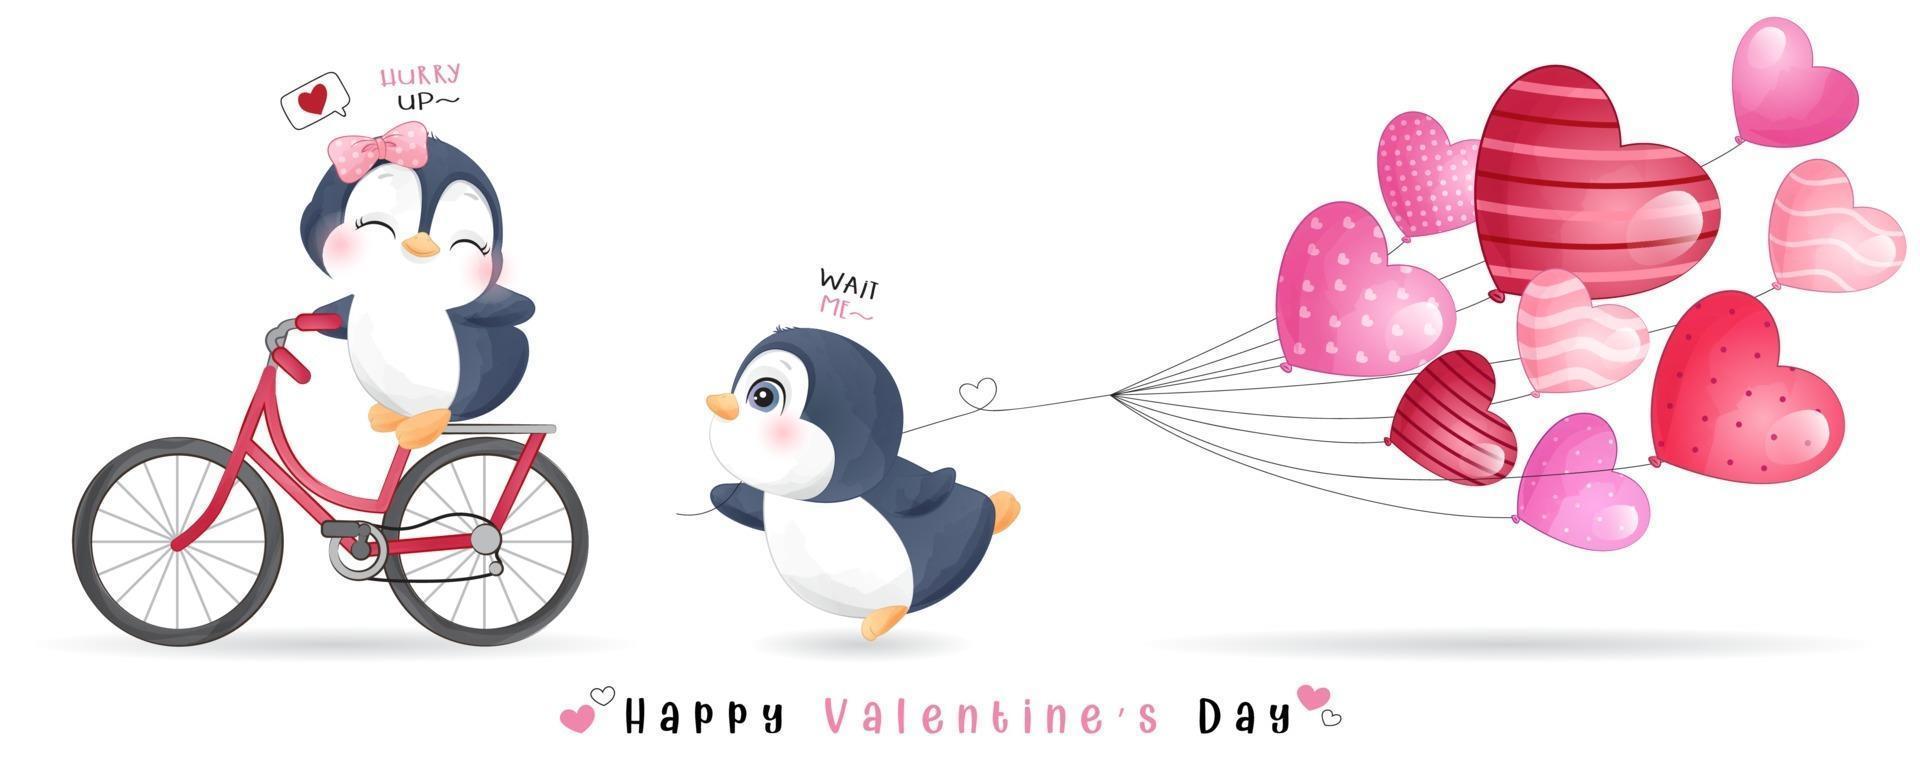 simpatico pinguino doodle per la raccolta di San Valentino vettore